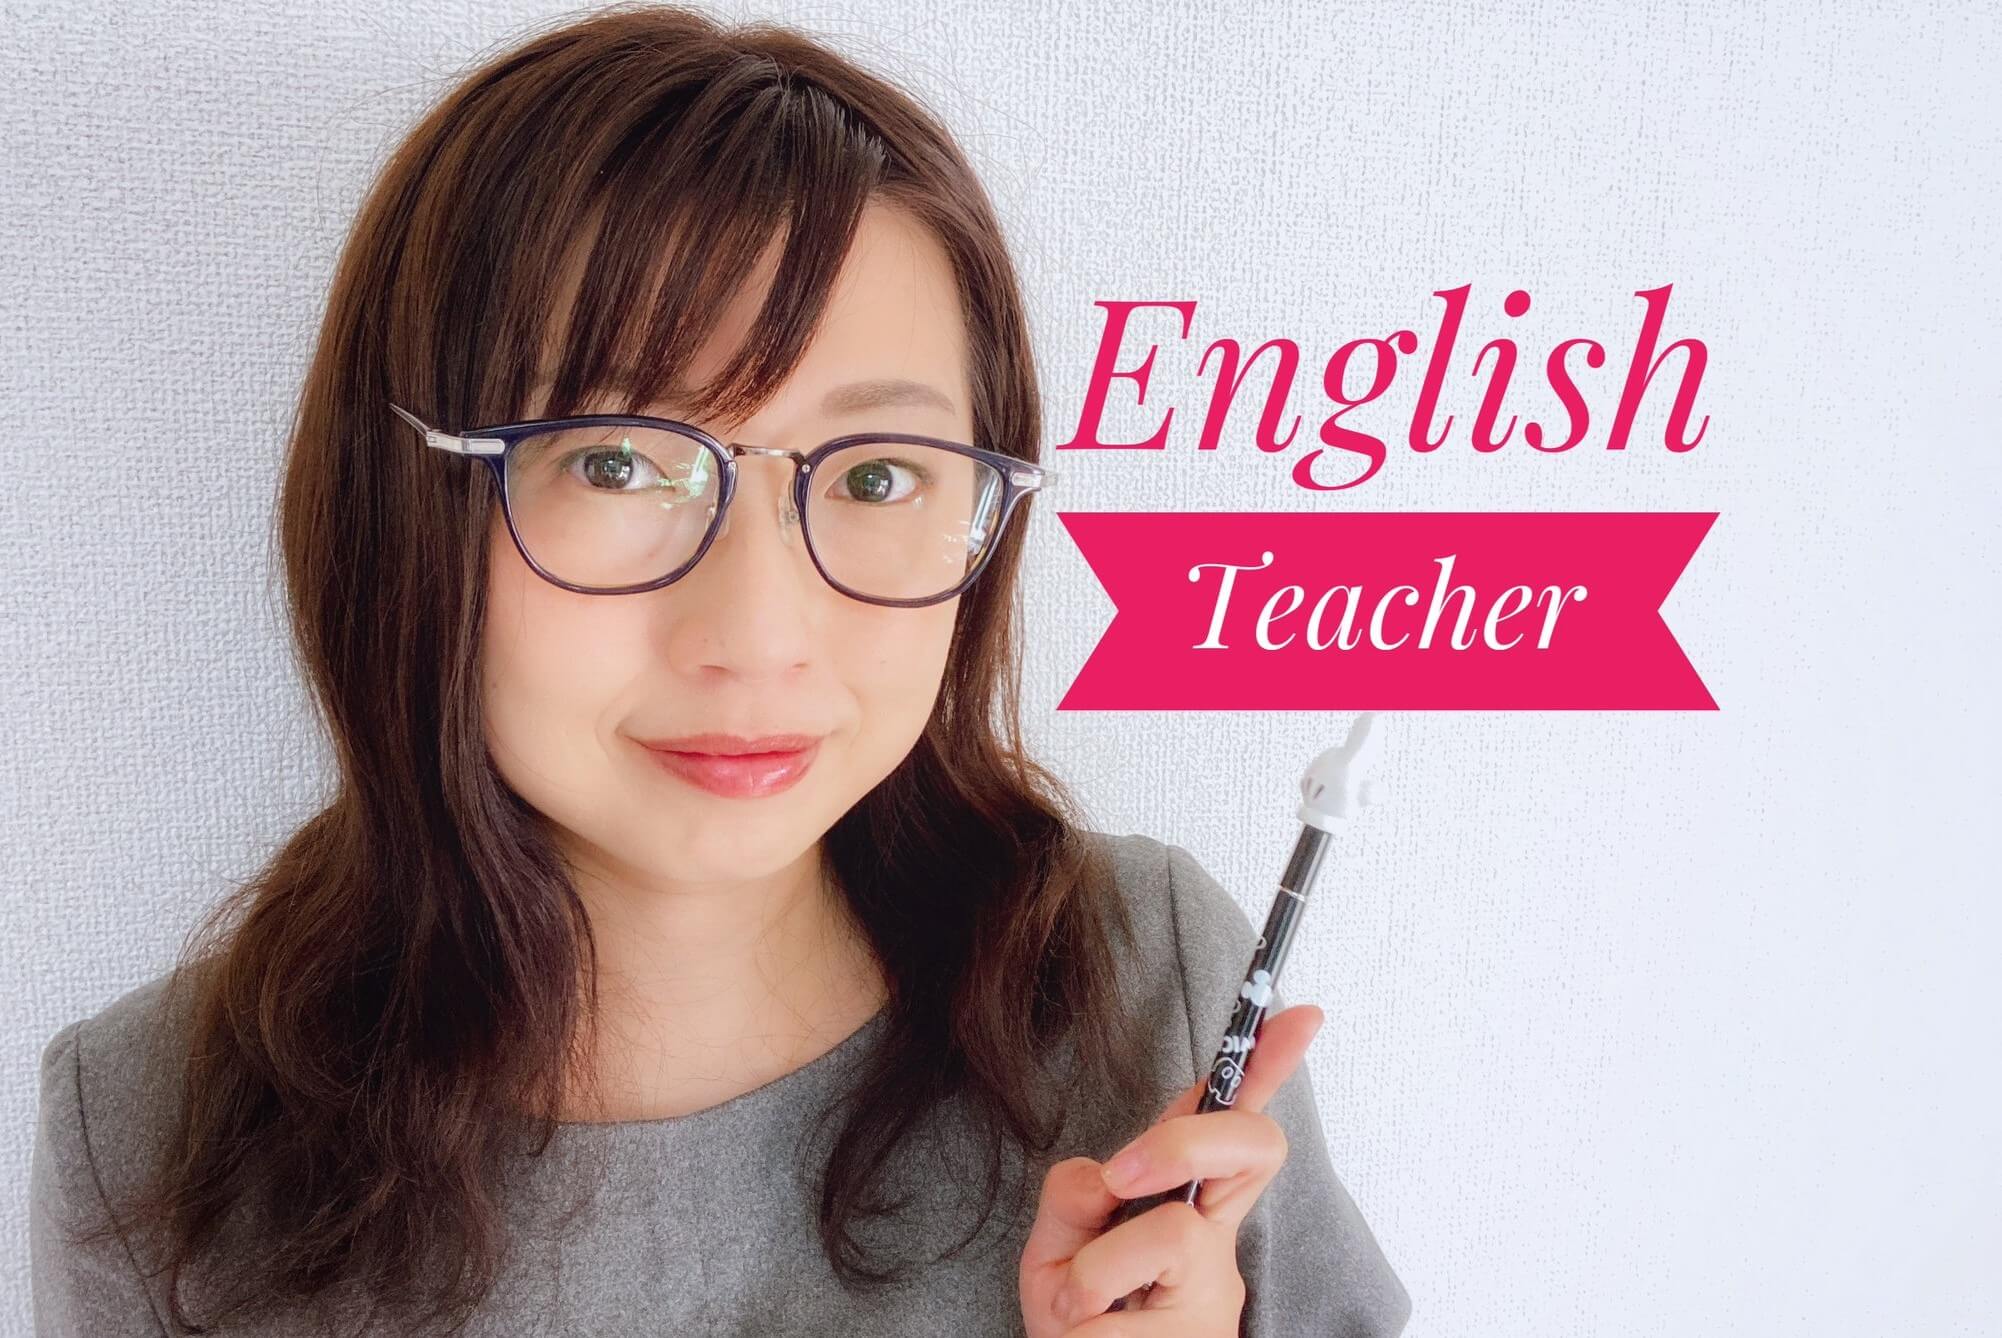 【インタビュー】荒木妙子コーチ「中学英文法ができれば英語は話せる」